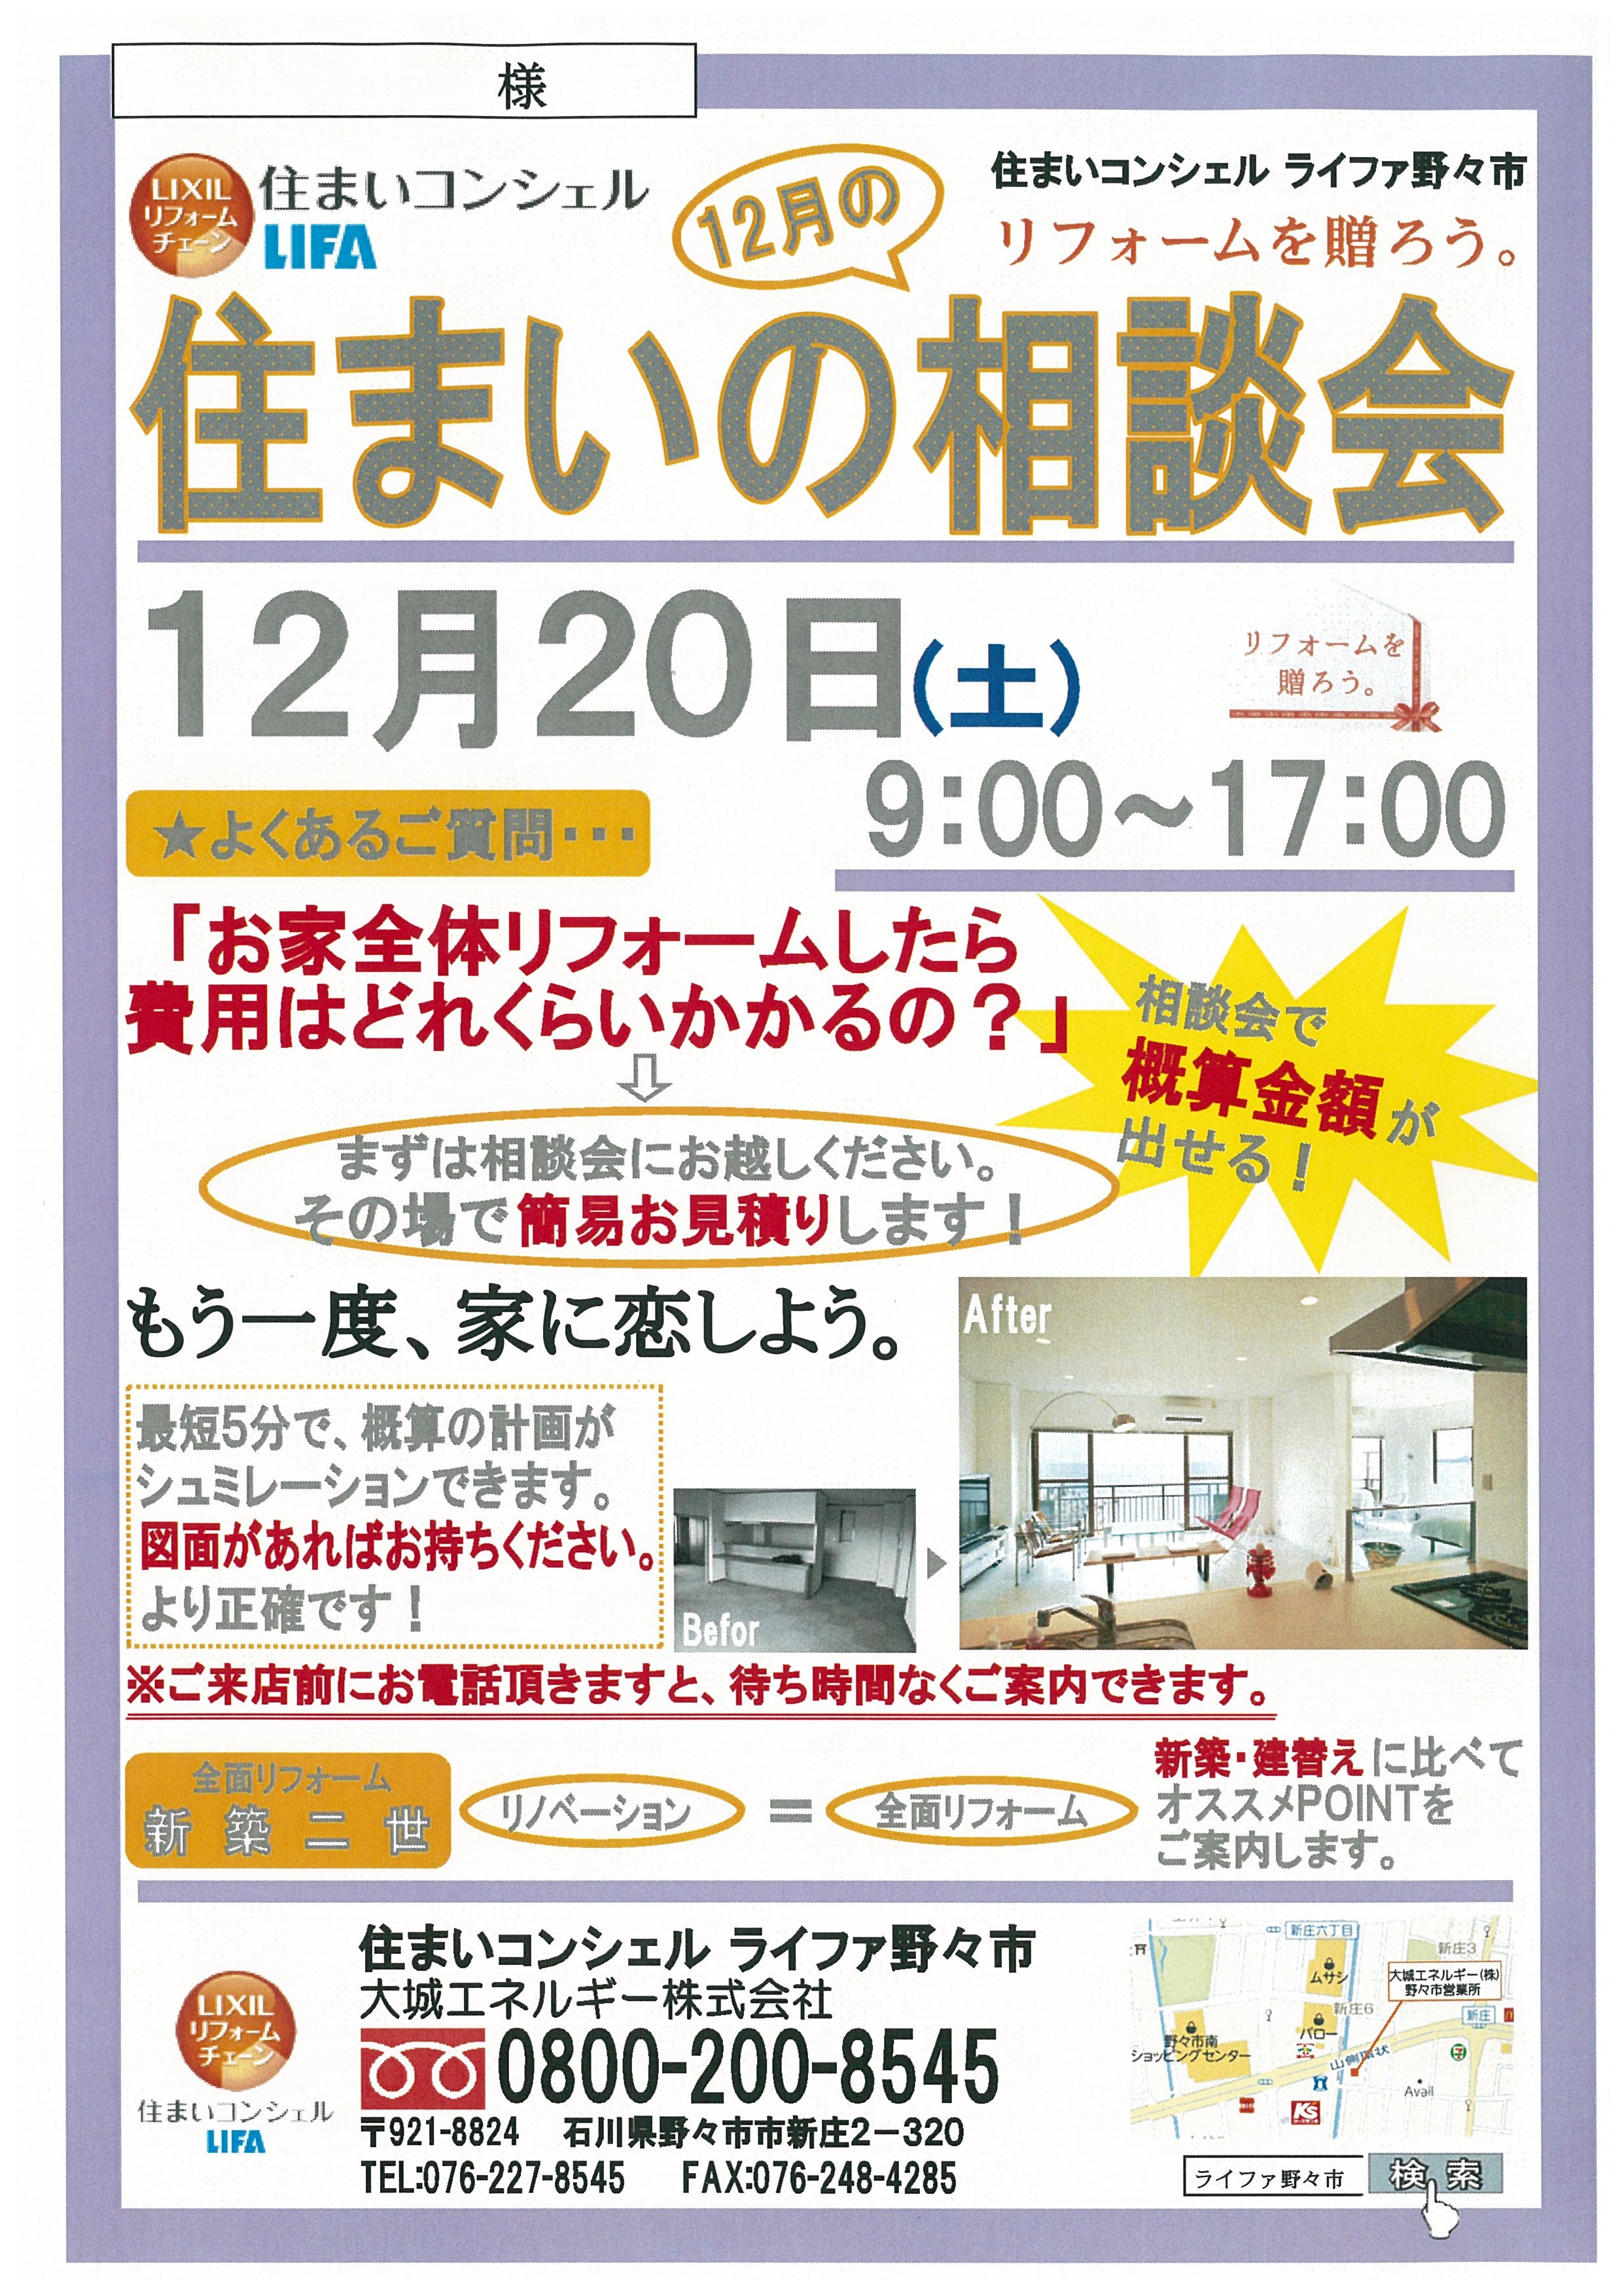 https://www.lixil-reformshop.jp/shop/SC00182004/2014/12/17/20141209164733-0001.jpg